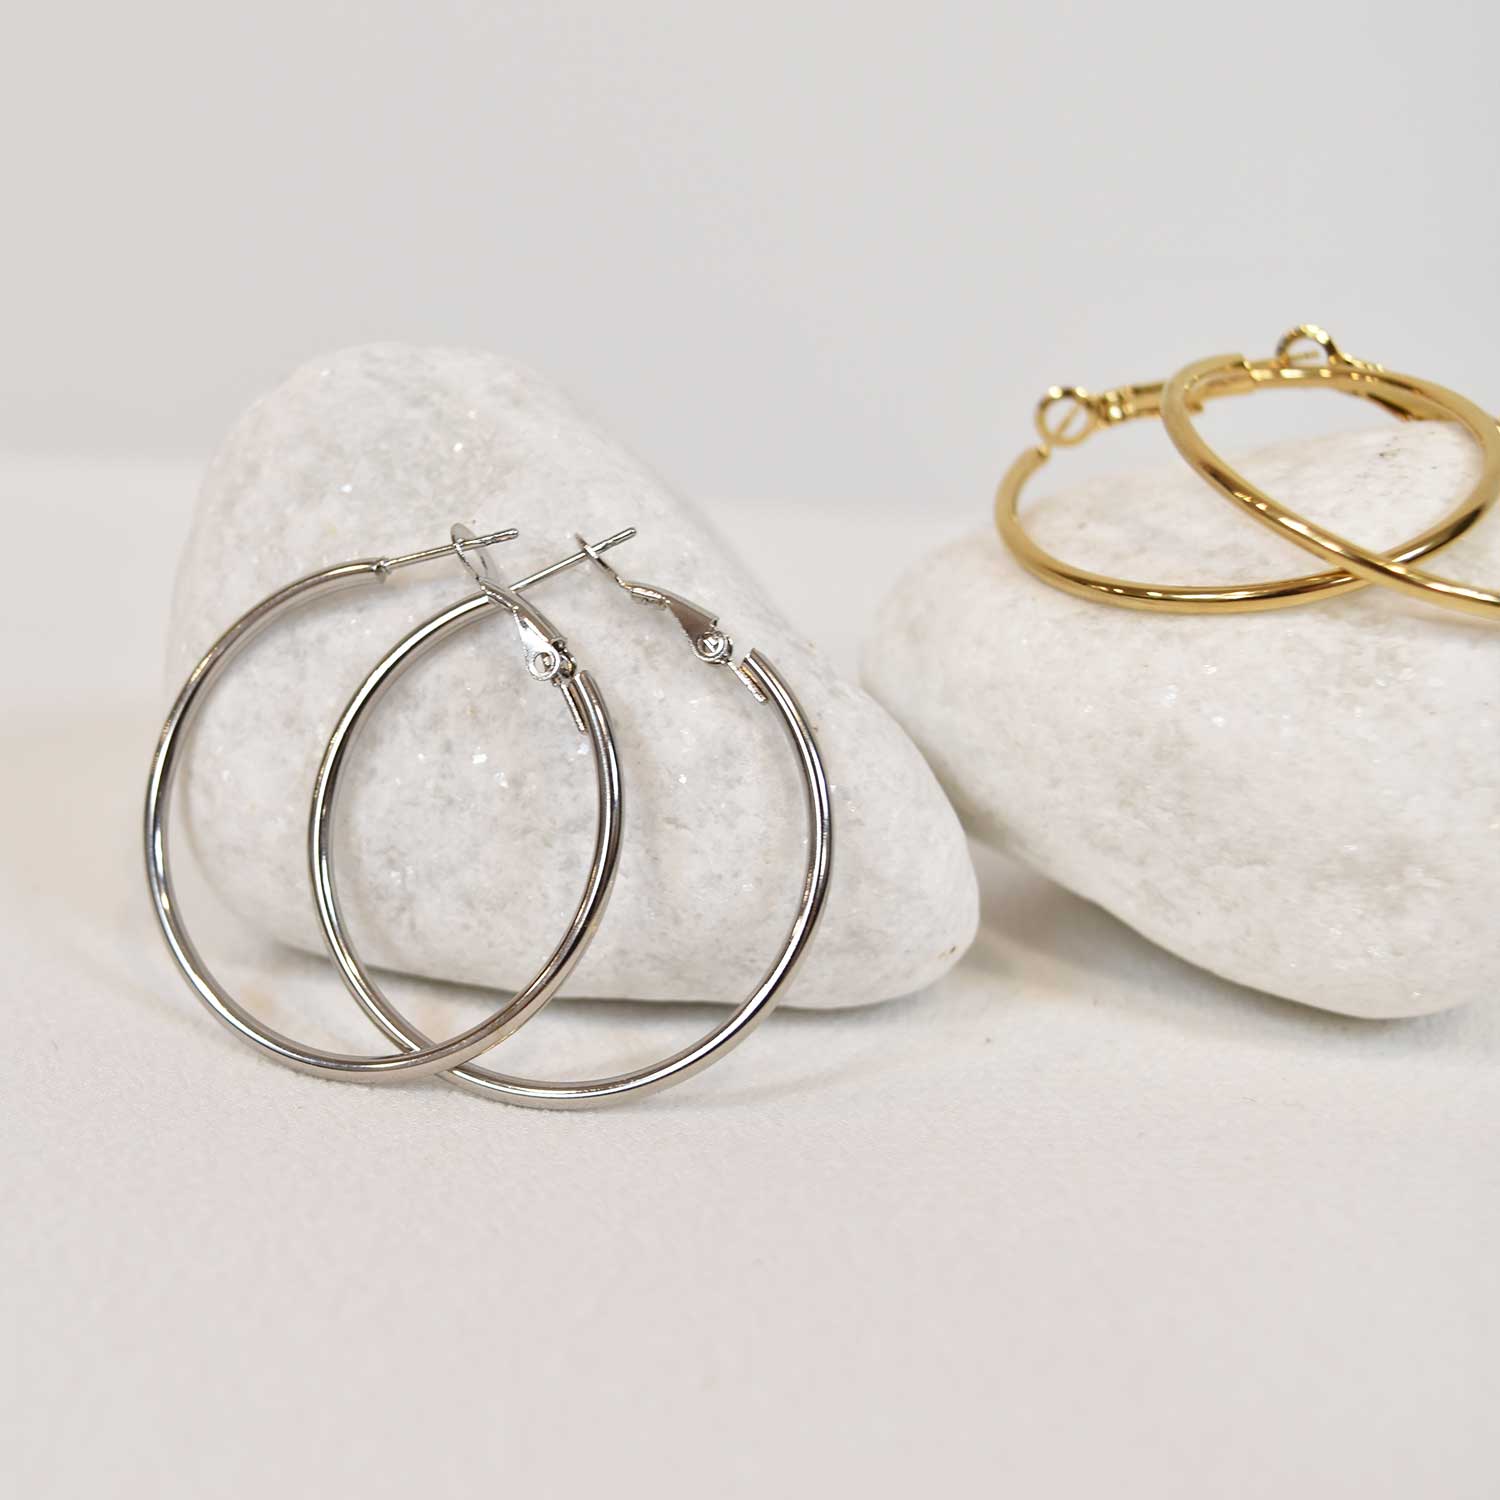 Silvered thin hoop earrings